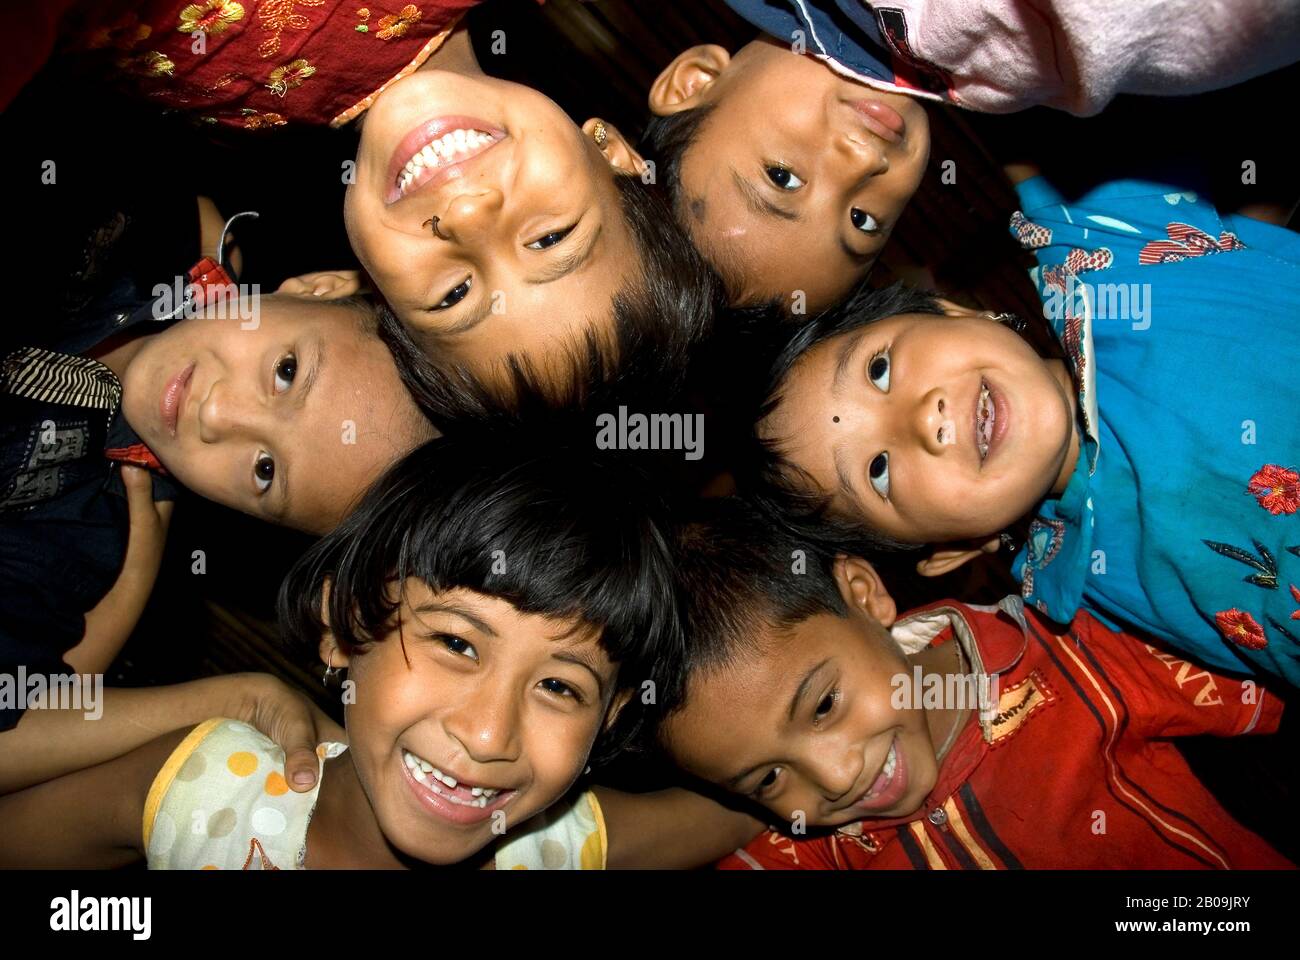 Children of an elementary school in Matiranga, Khagrachari, Bangladesh. May 12, 2010. Stock Photo